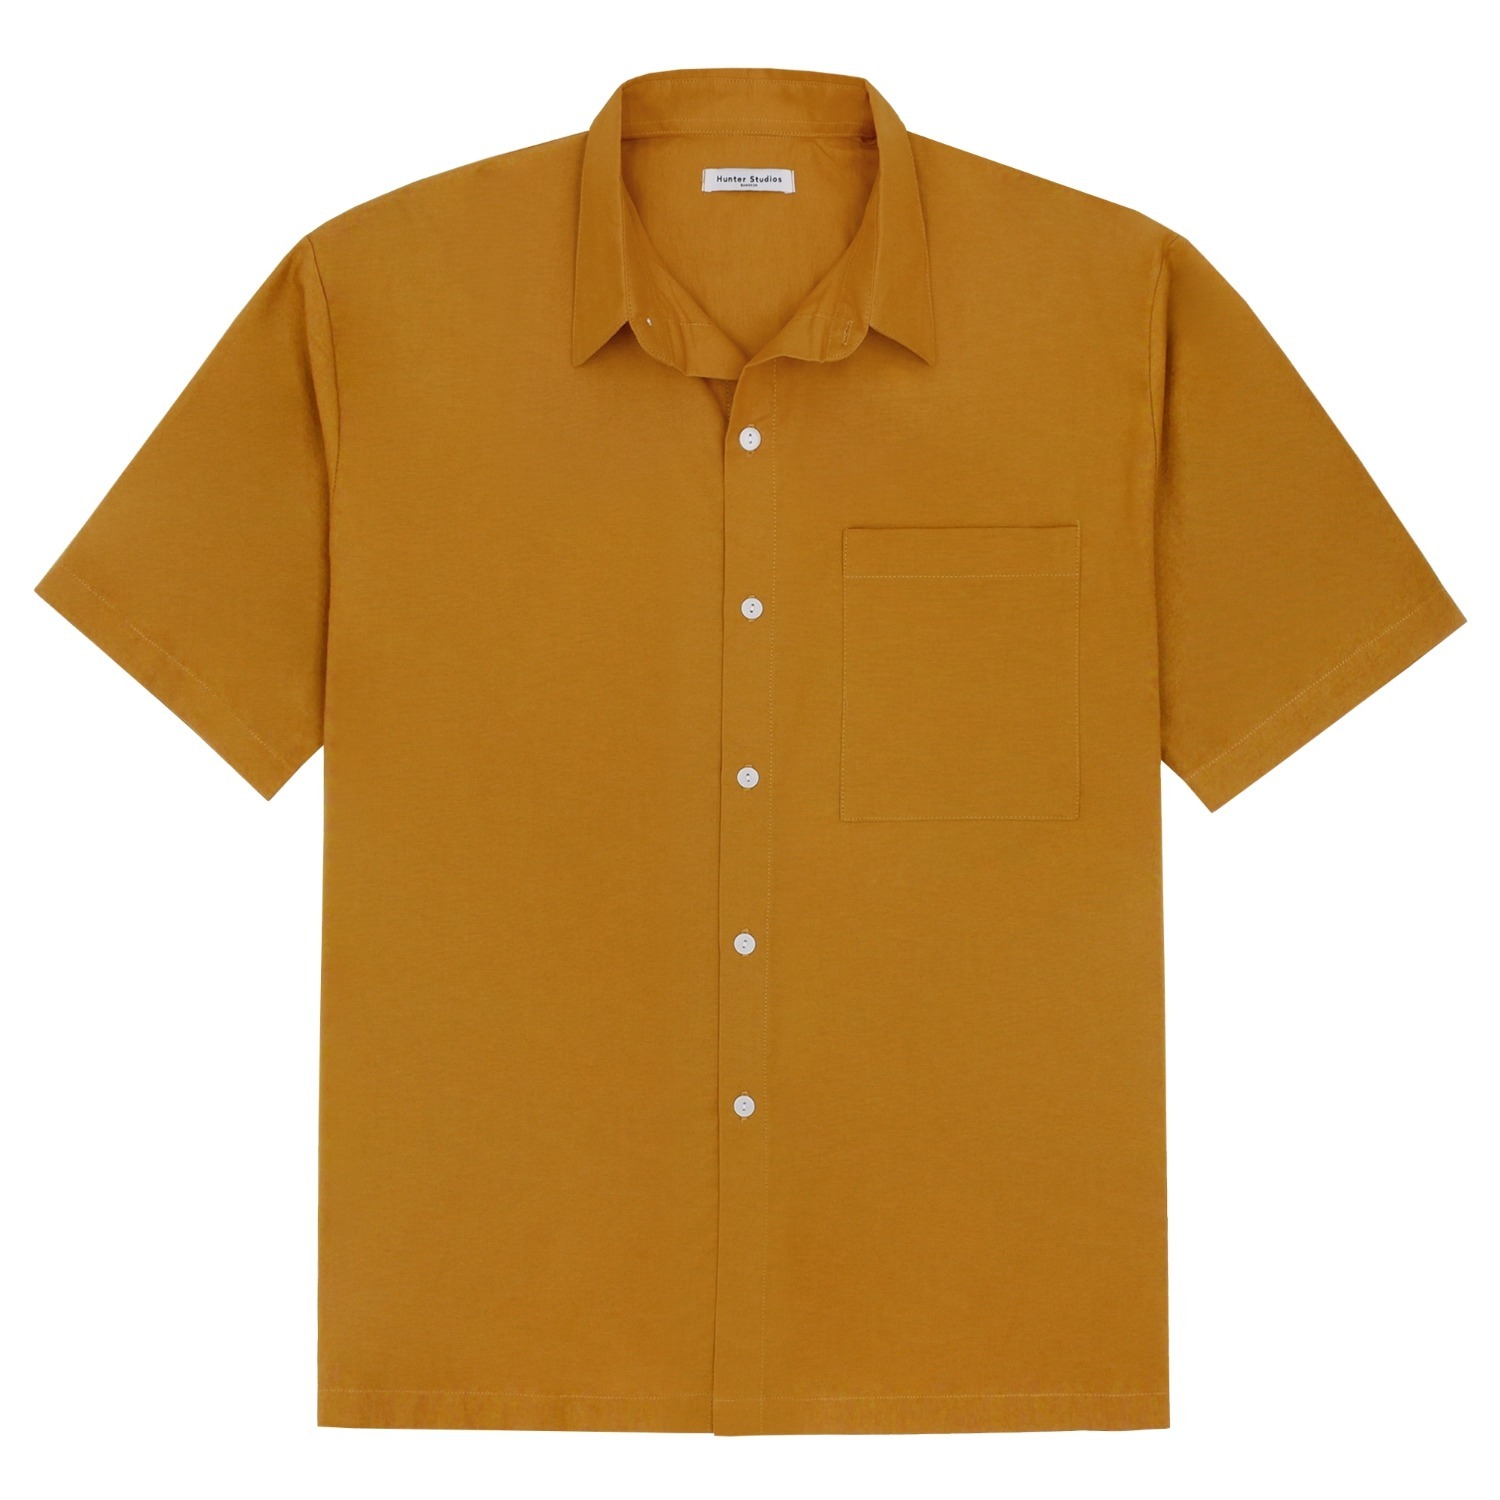 Fainly Shirt (Mustard)